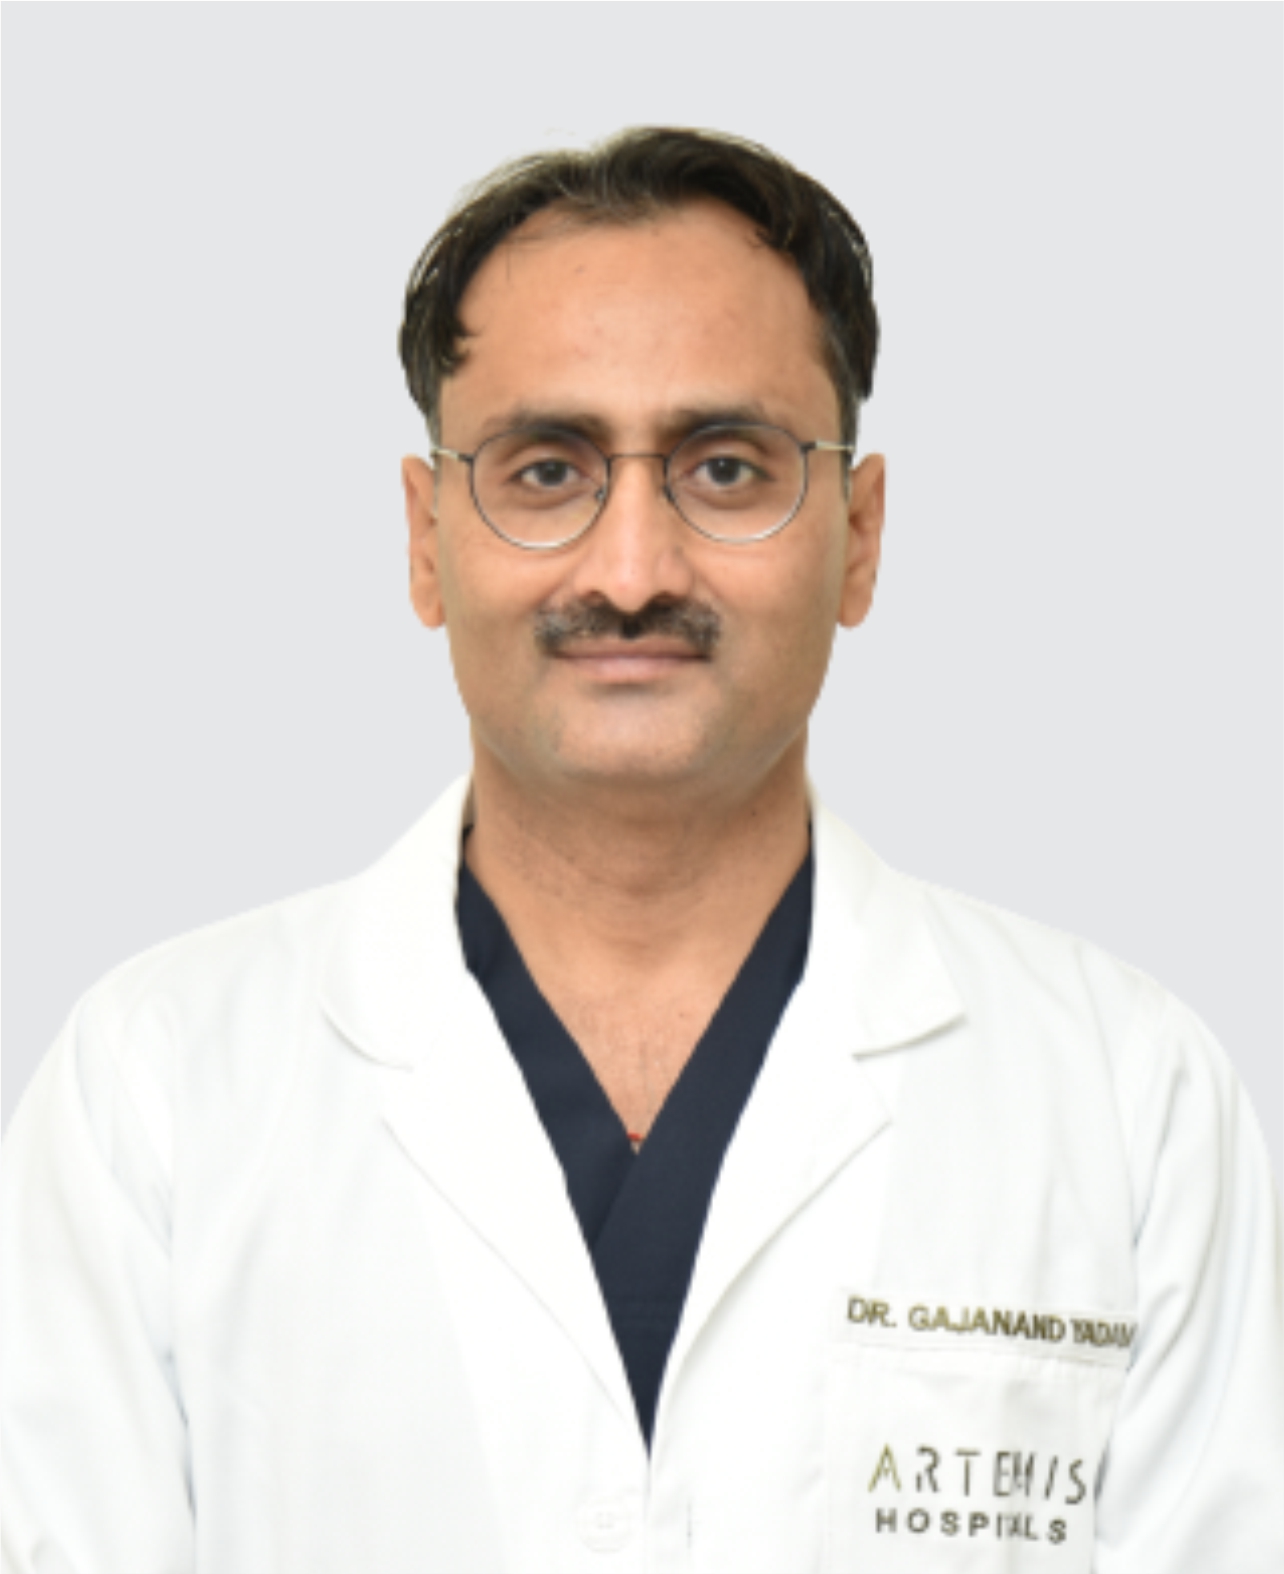 Dr. Gajanand Yadav